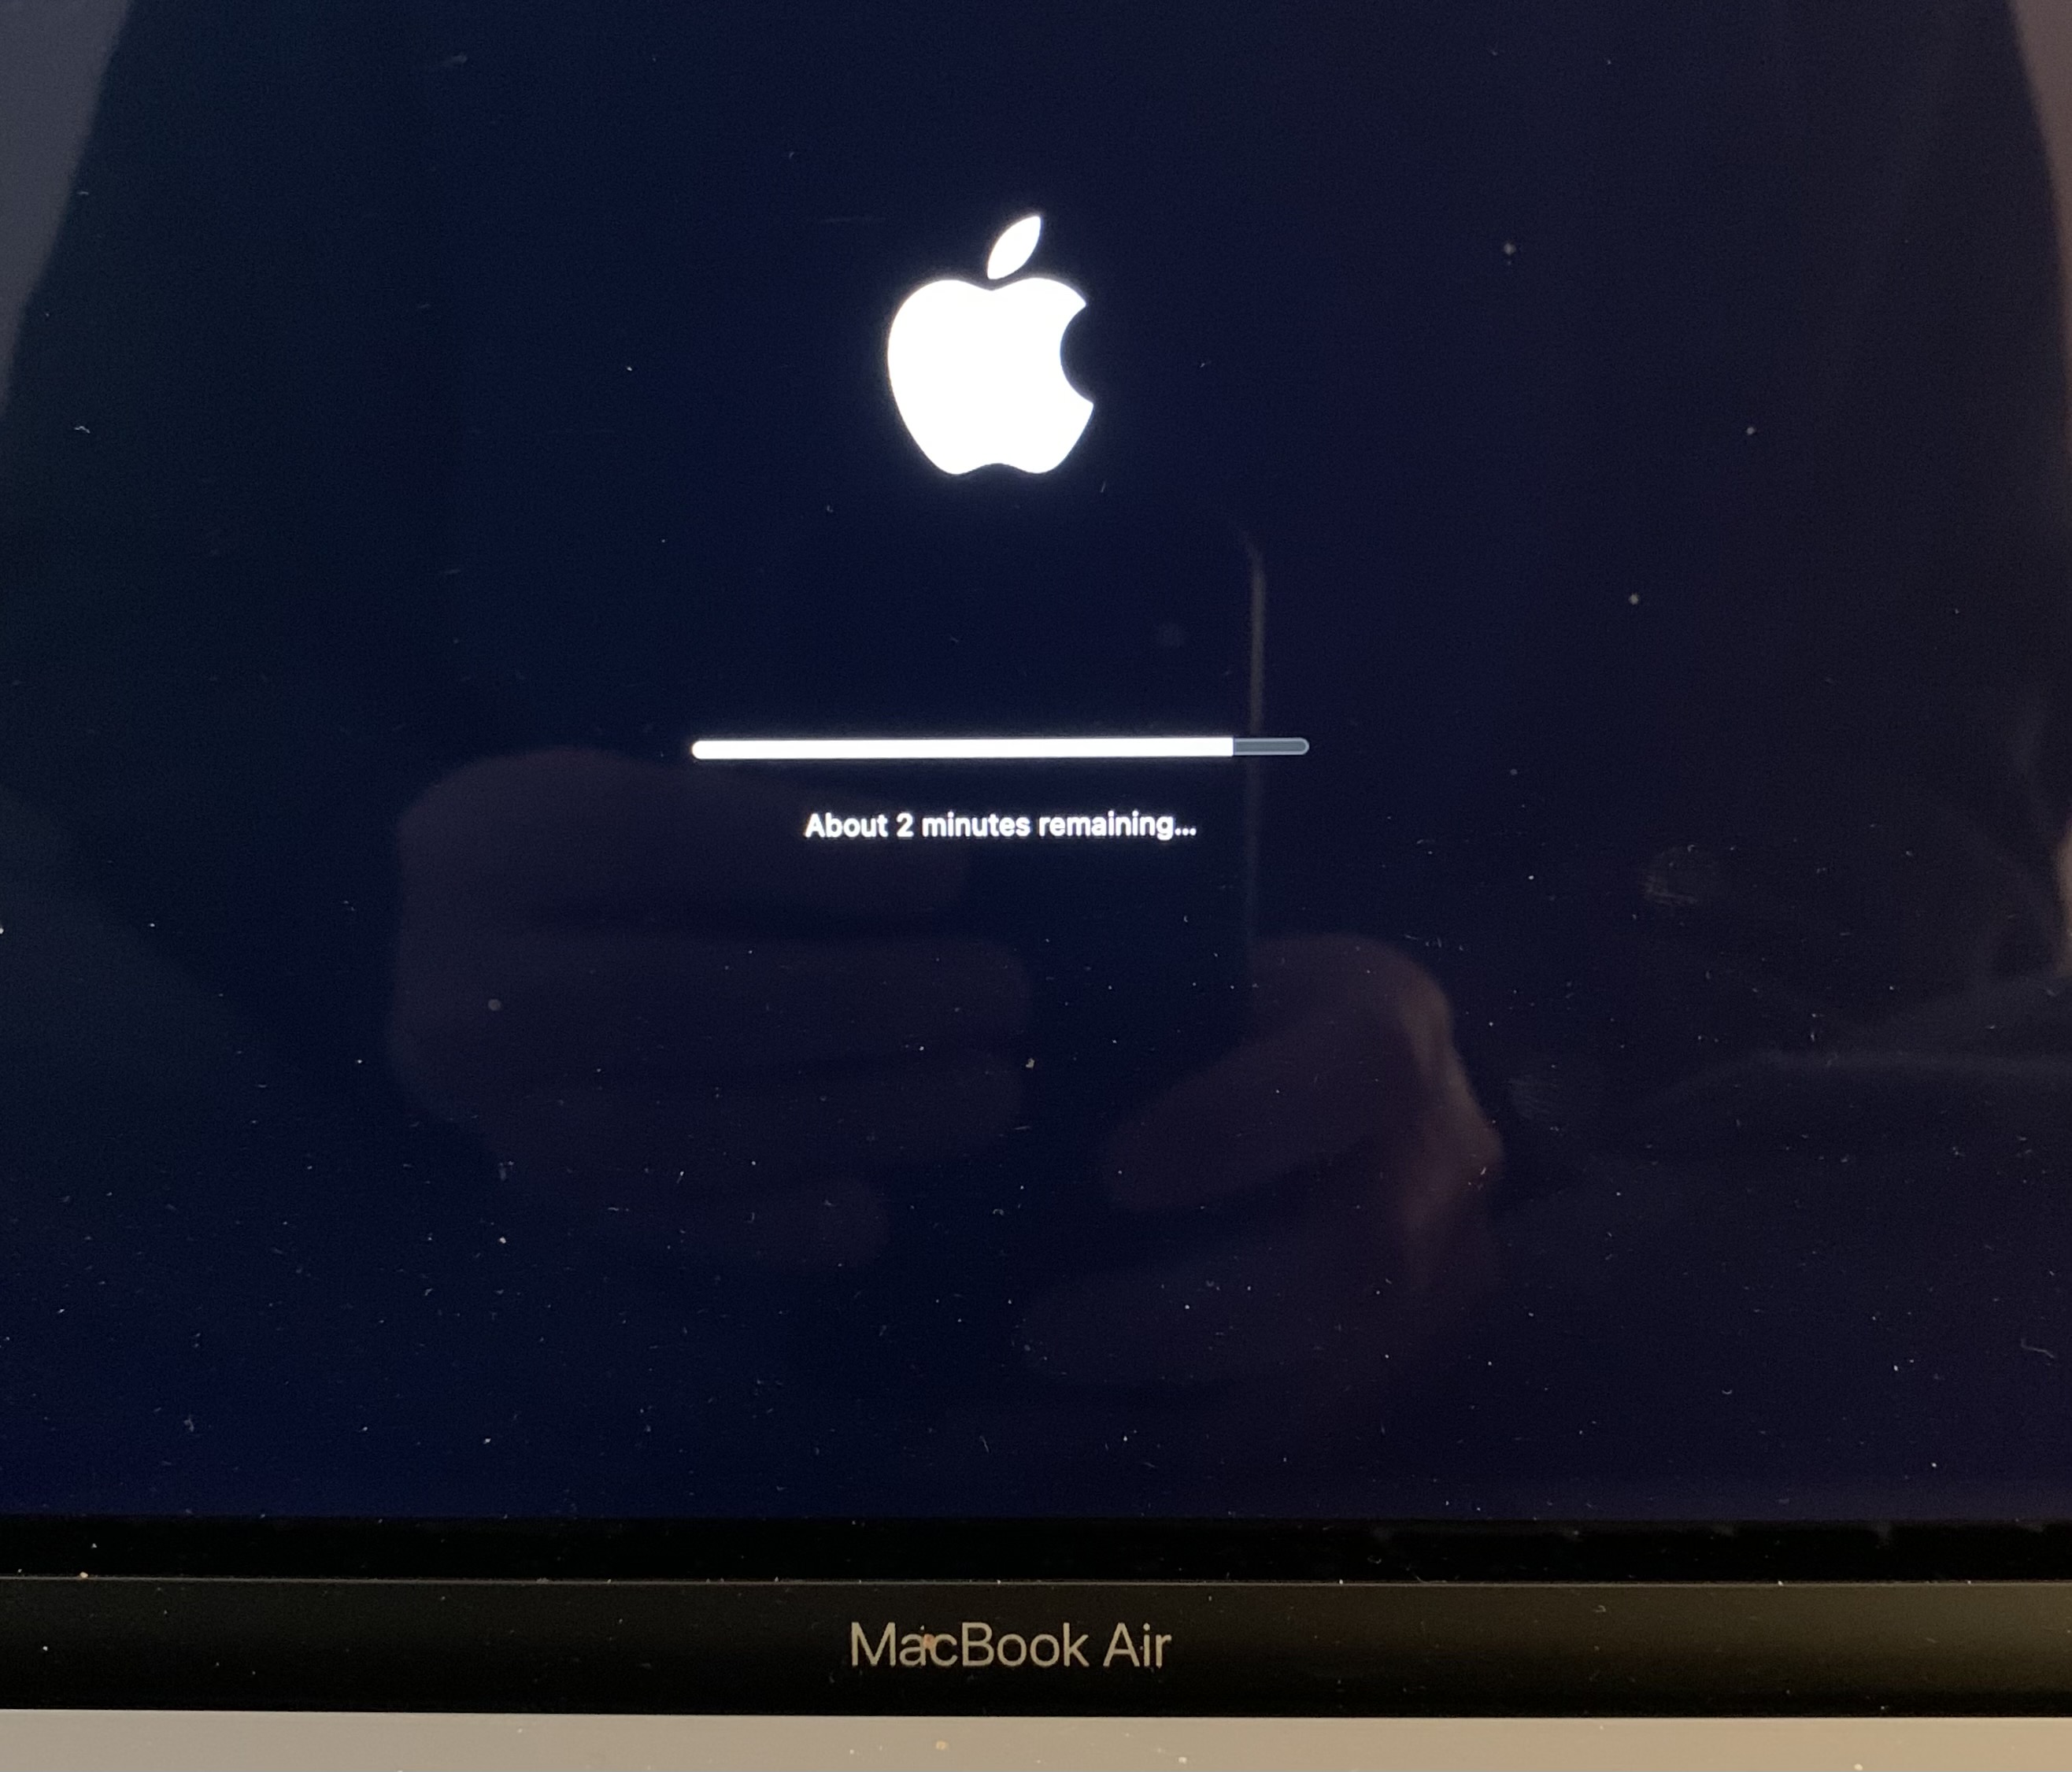 OS update progress screen